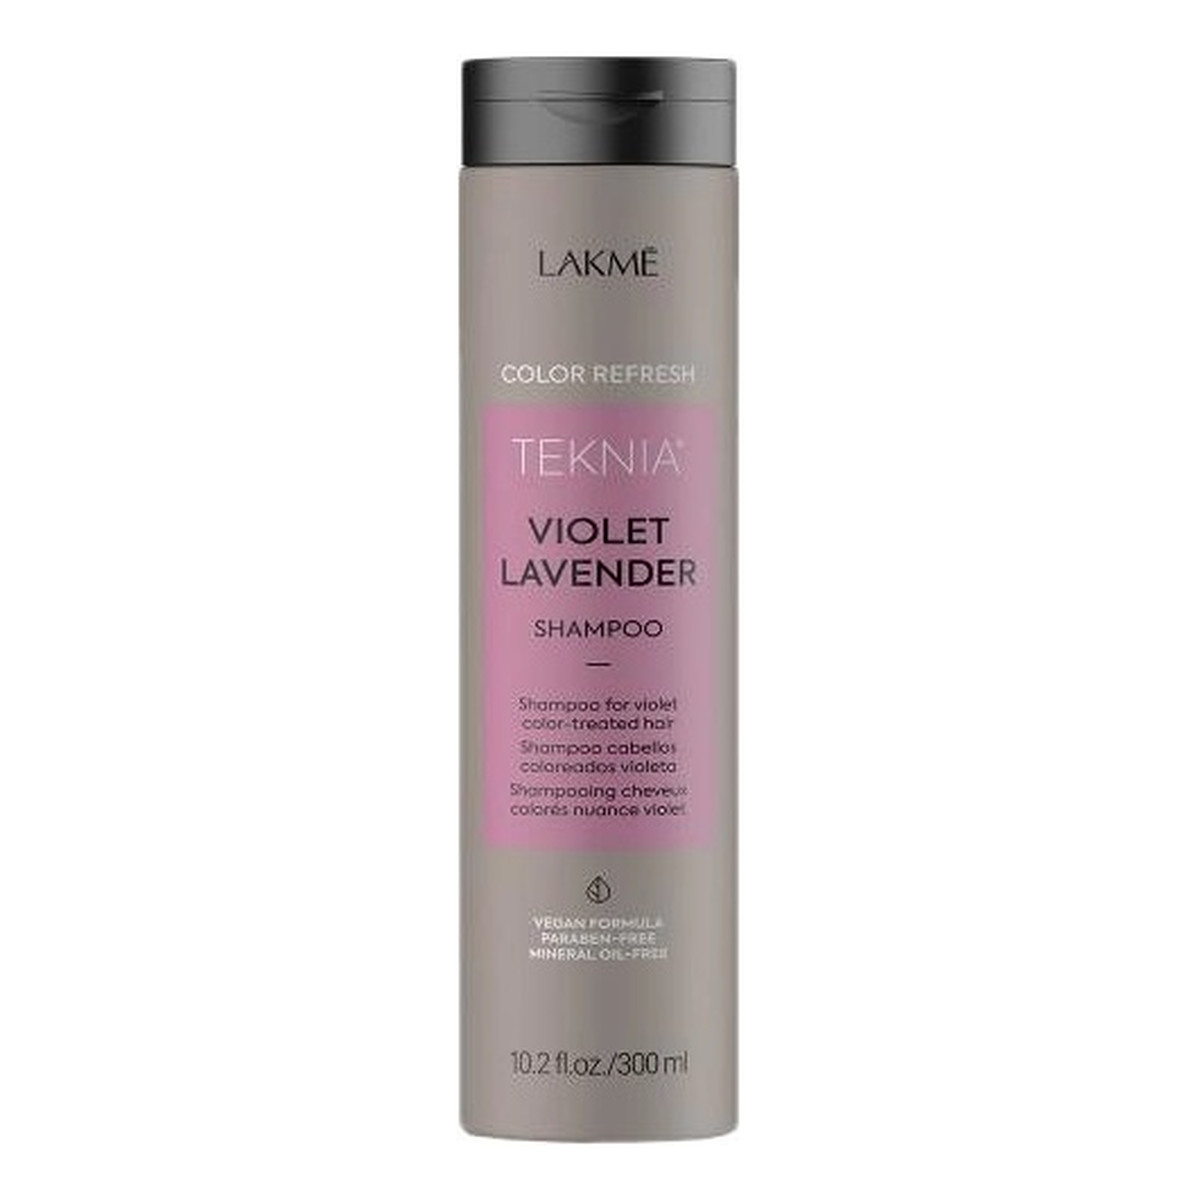 Lakme Teknia violet lavender shampoo odświeżający kolor szampon do włosów farbowanych 300ml